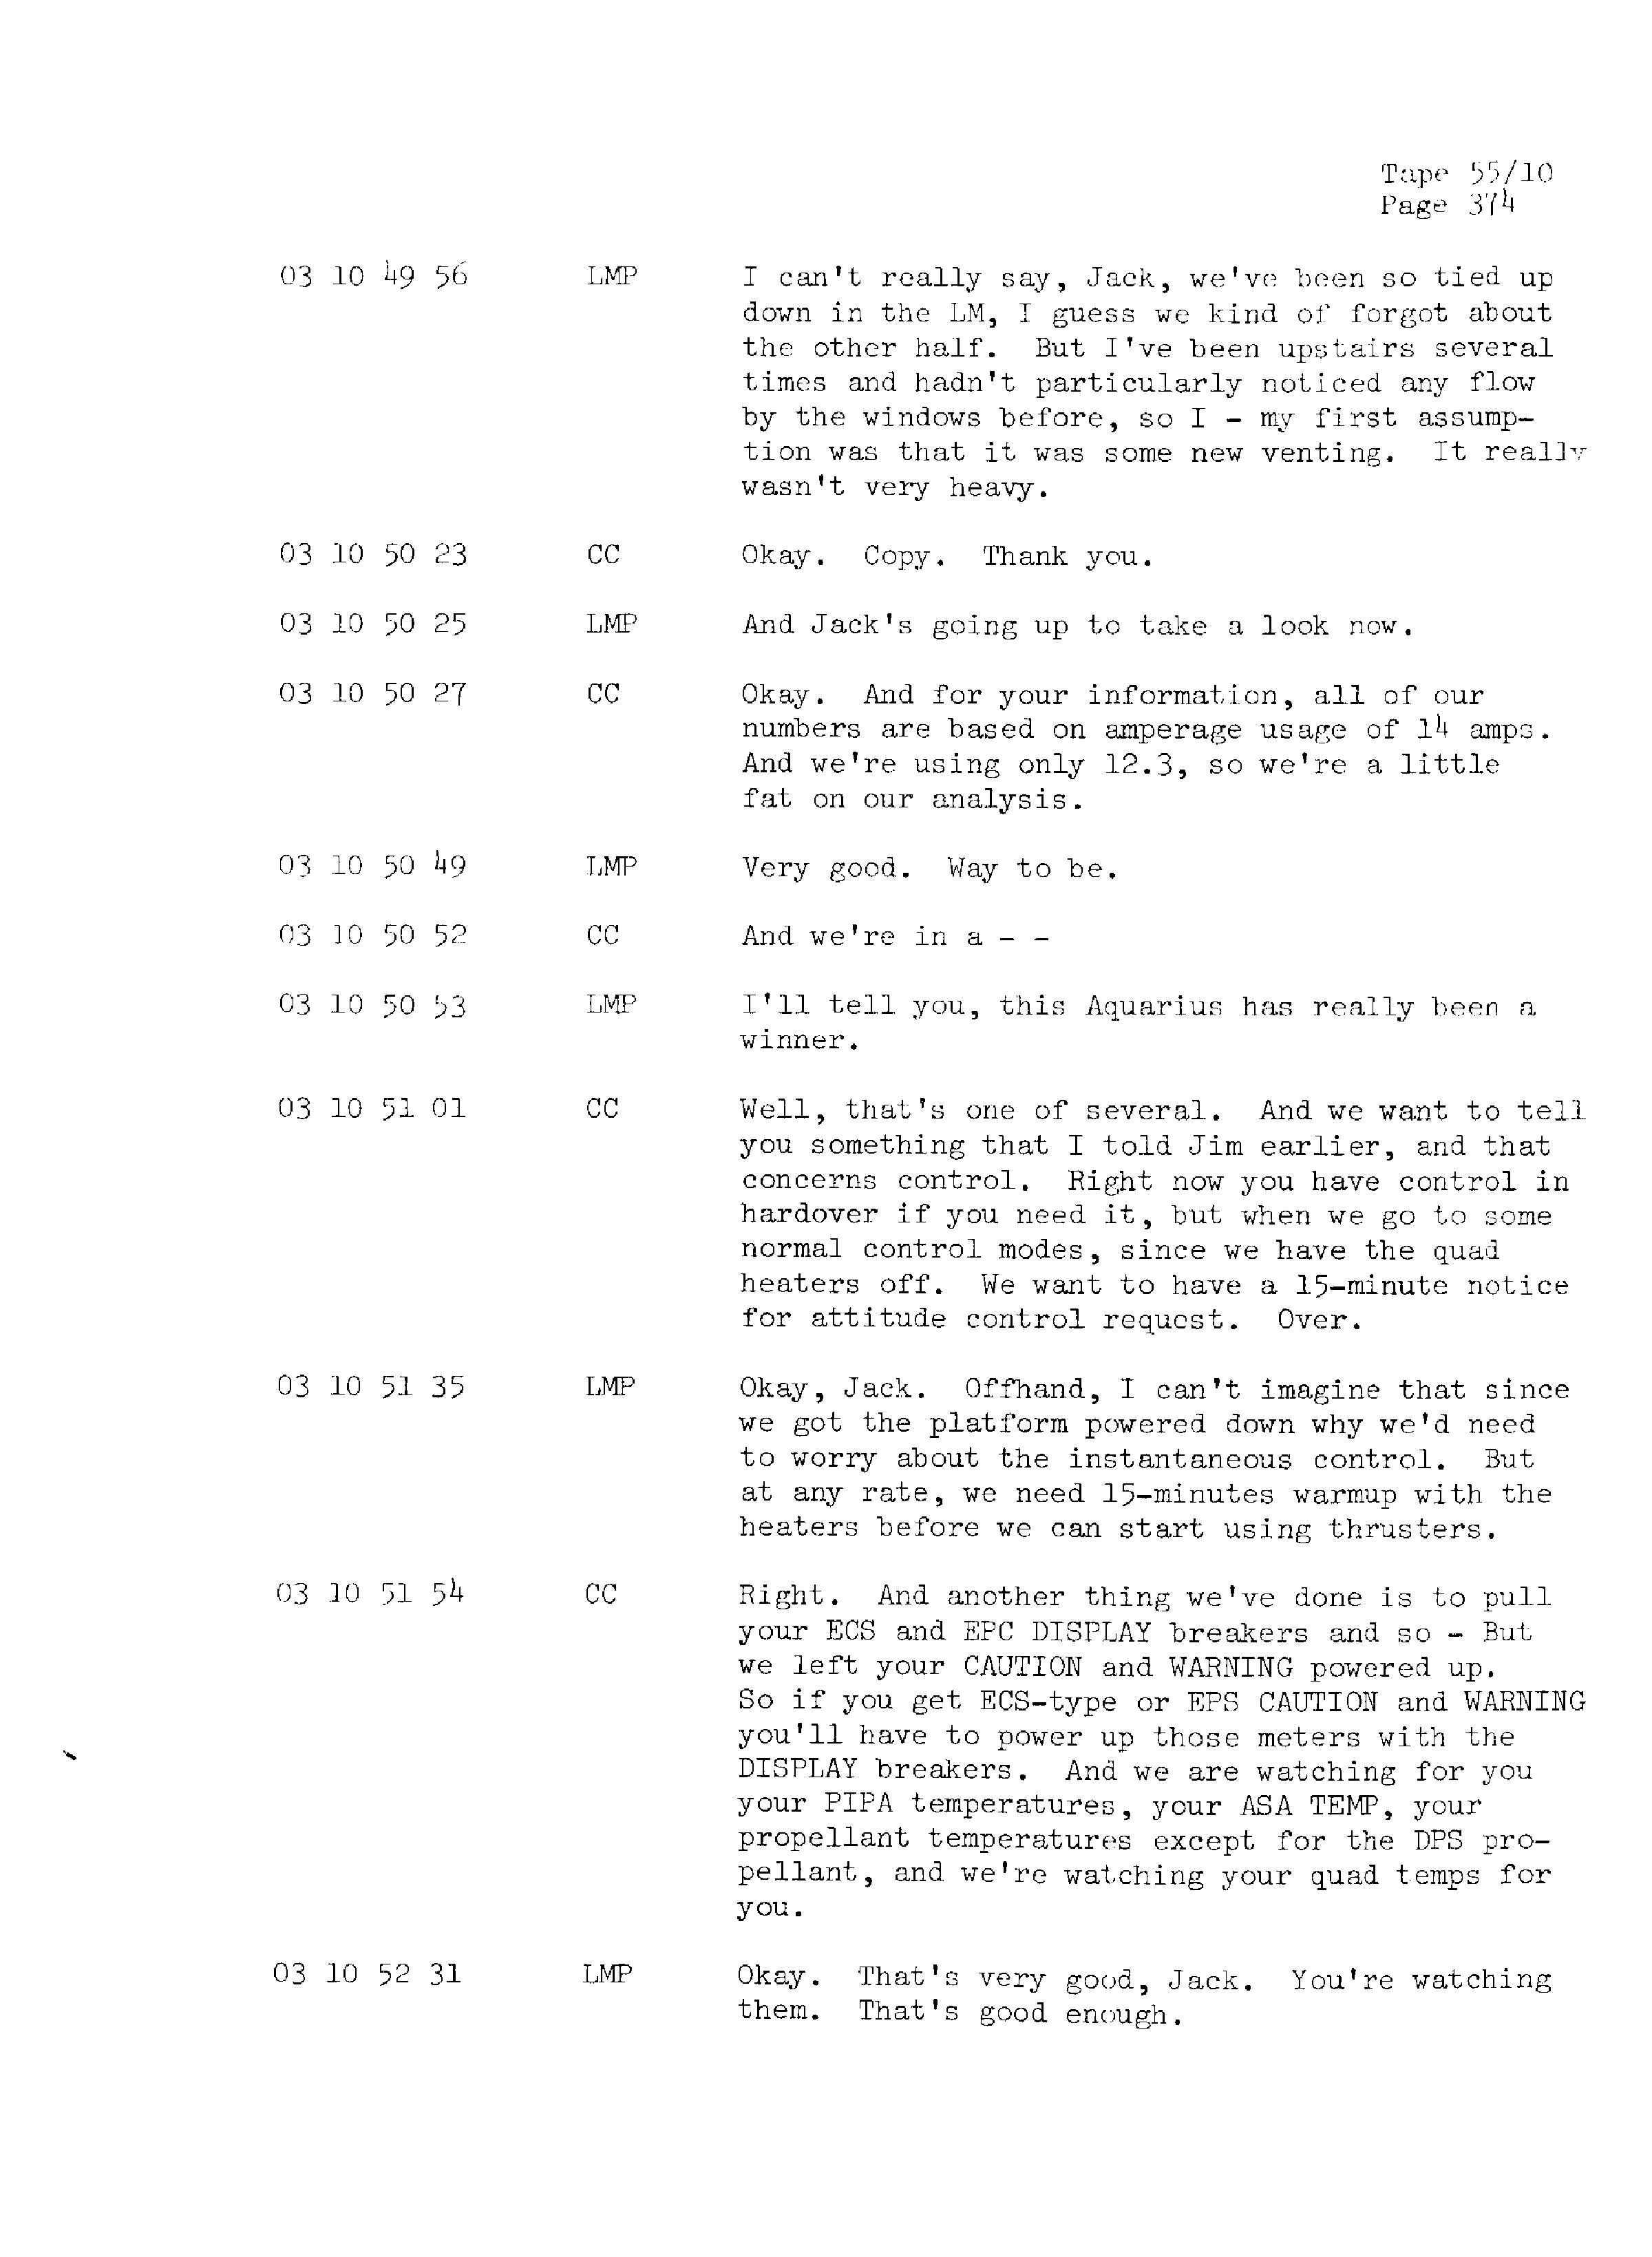 Page 381 of Apollo 13’s original transcript